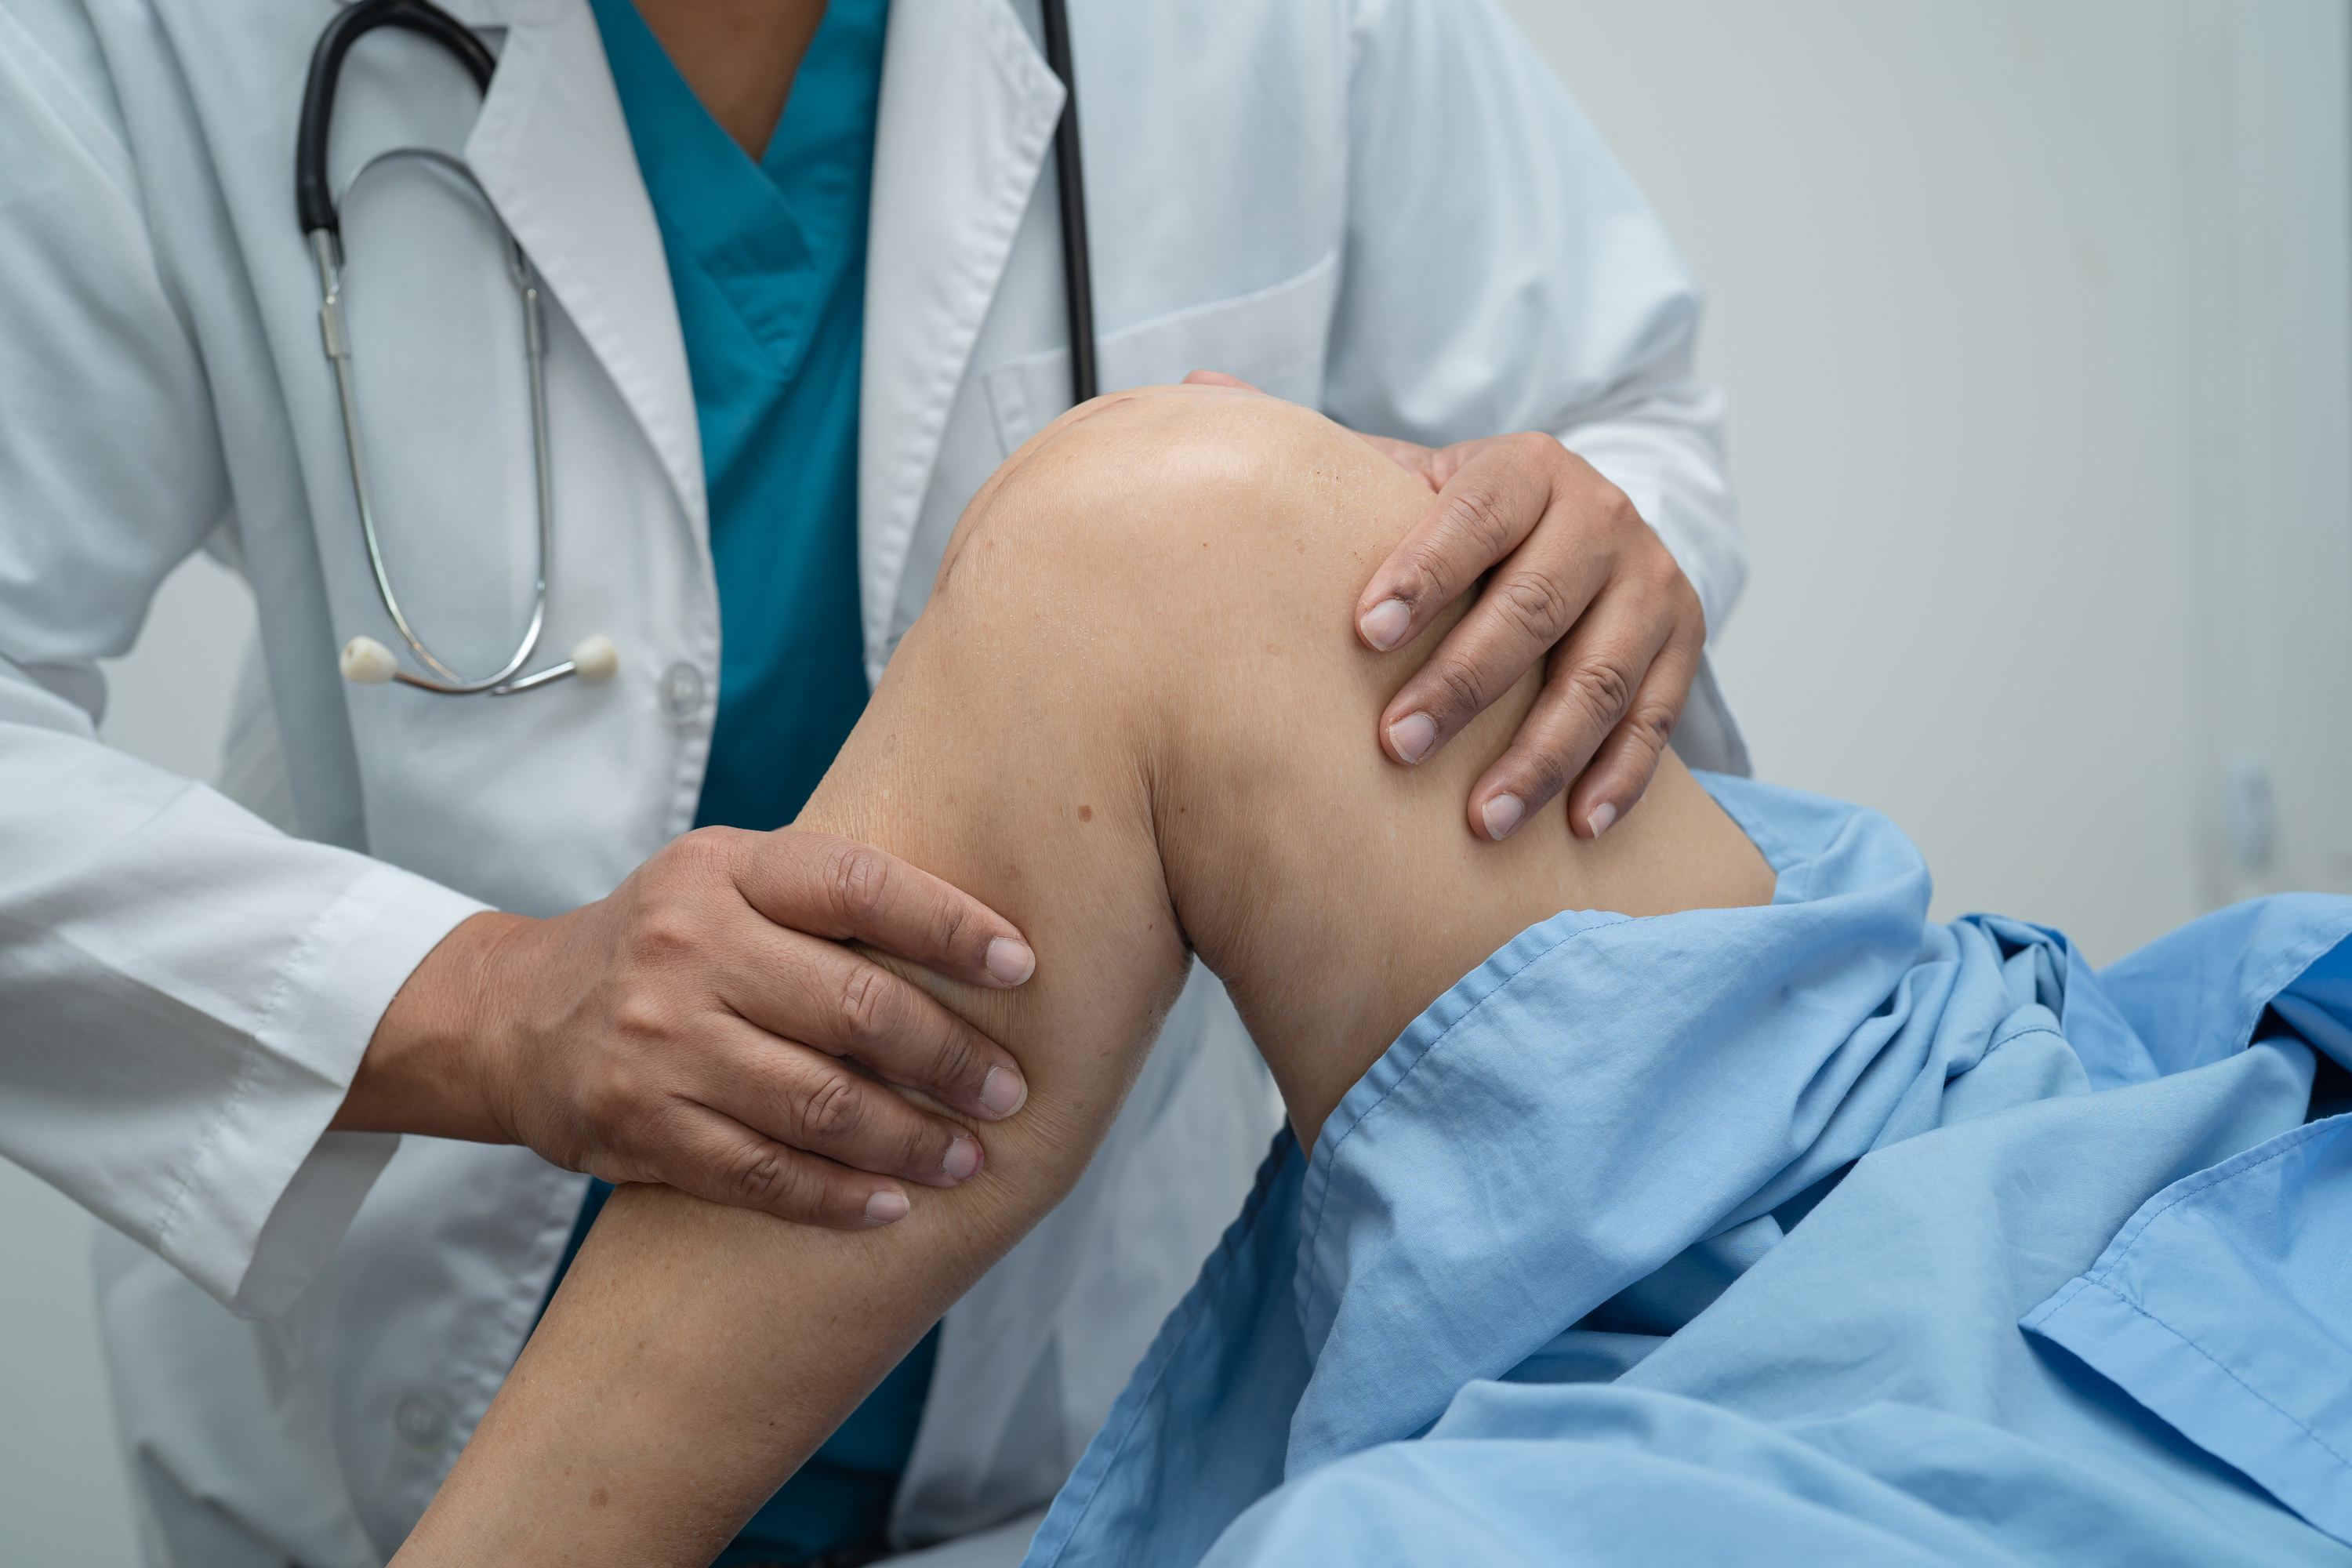 a doctor examining a leg